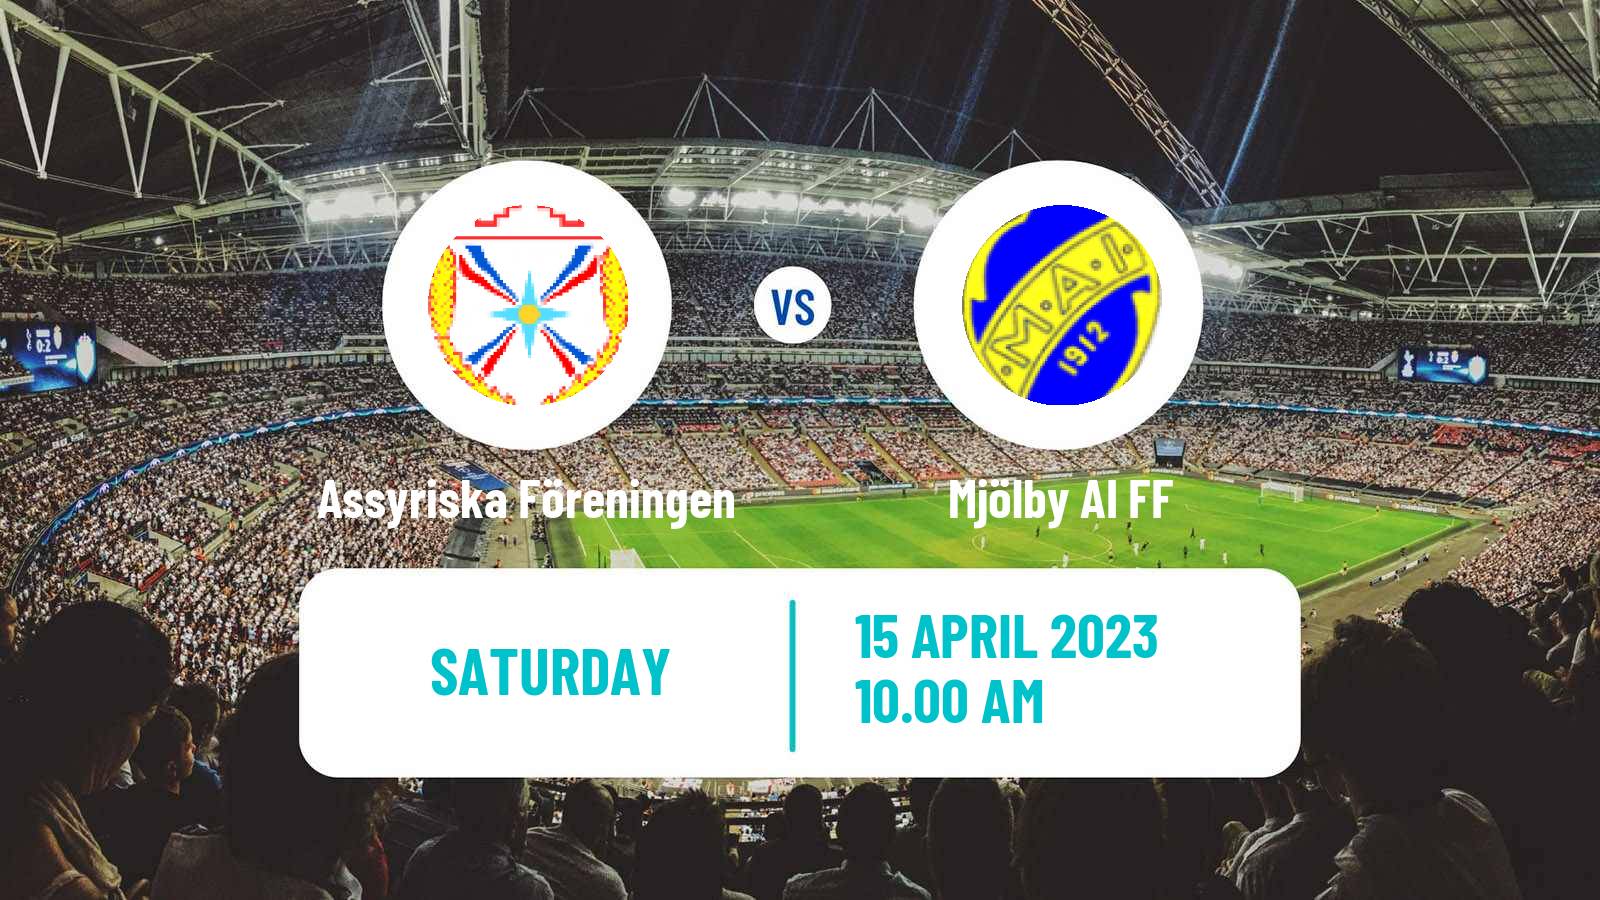 Soccer Swedish Division 2 - Södra Svealand Assyriska Föreningen - Mjölby AI FF